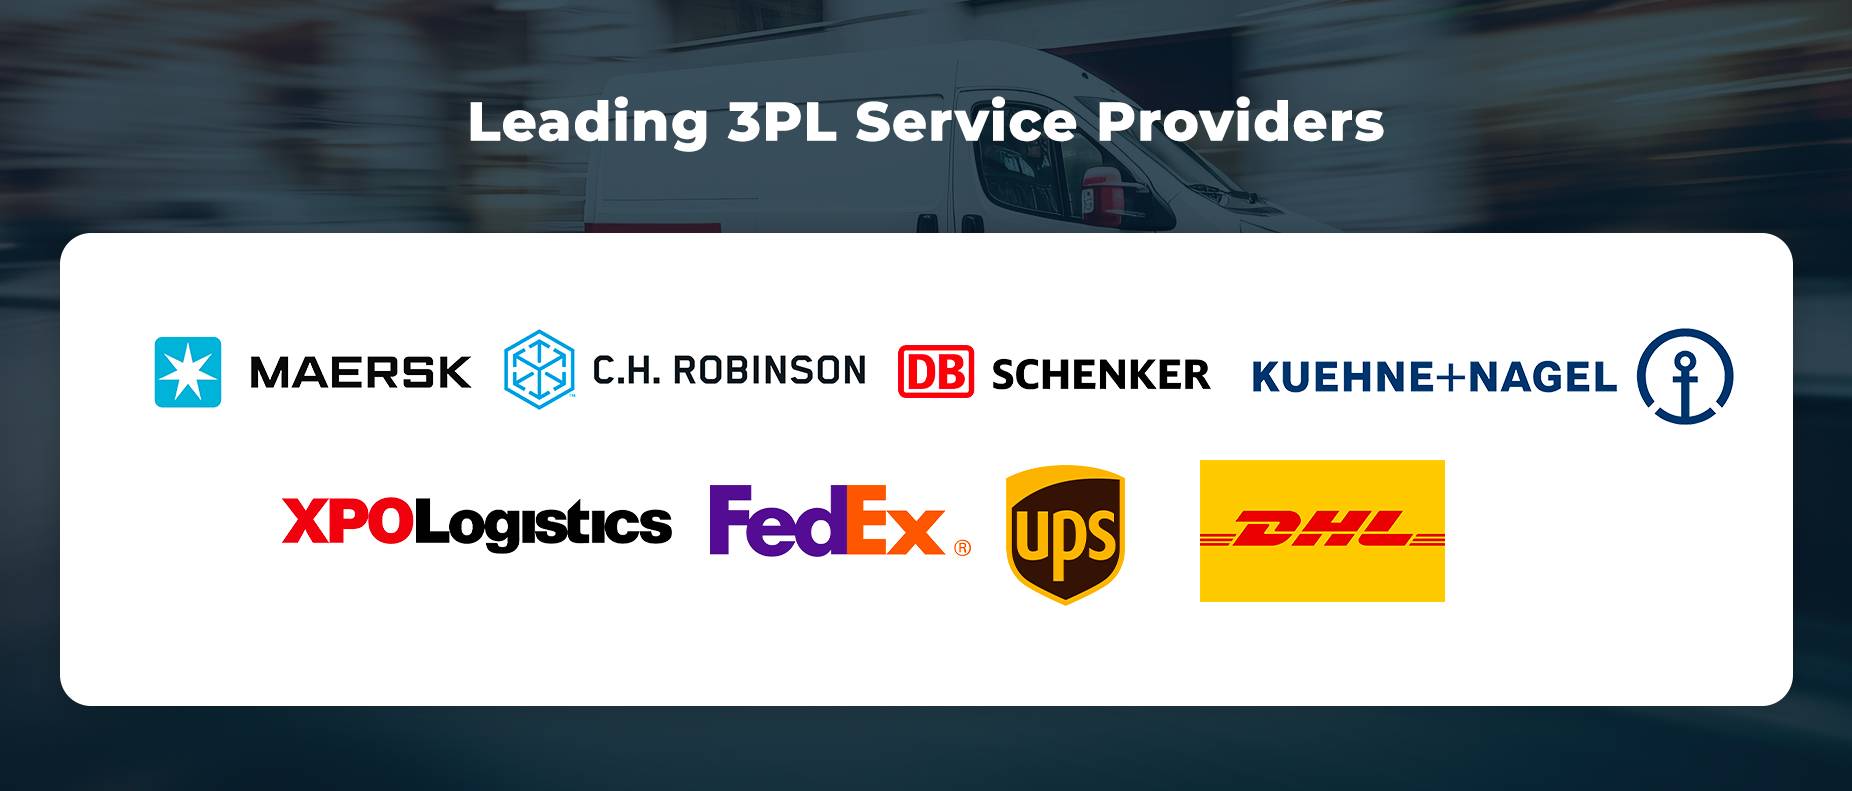 Các nhà cung cấp dịch vụ 3PL hàng đầu